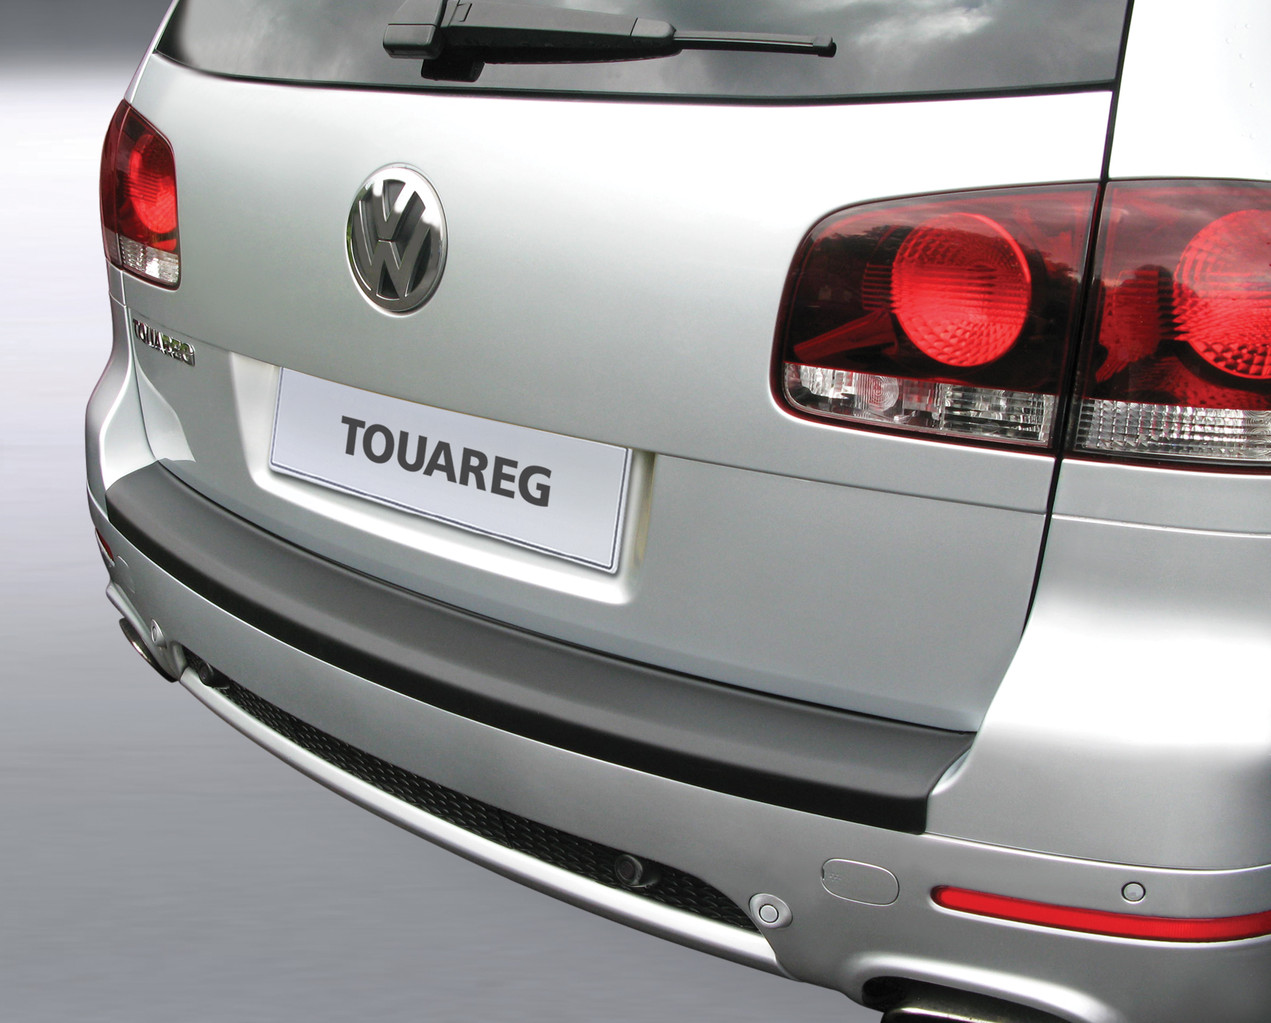 Ladekantenschutz für VW Touareg - Schutz für die Ladekante Ihres Fahrzeuges